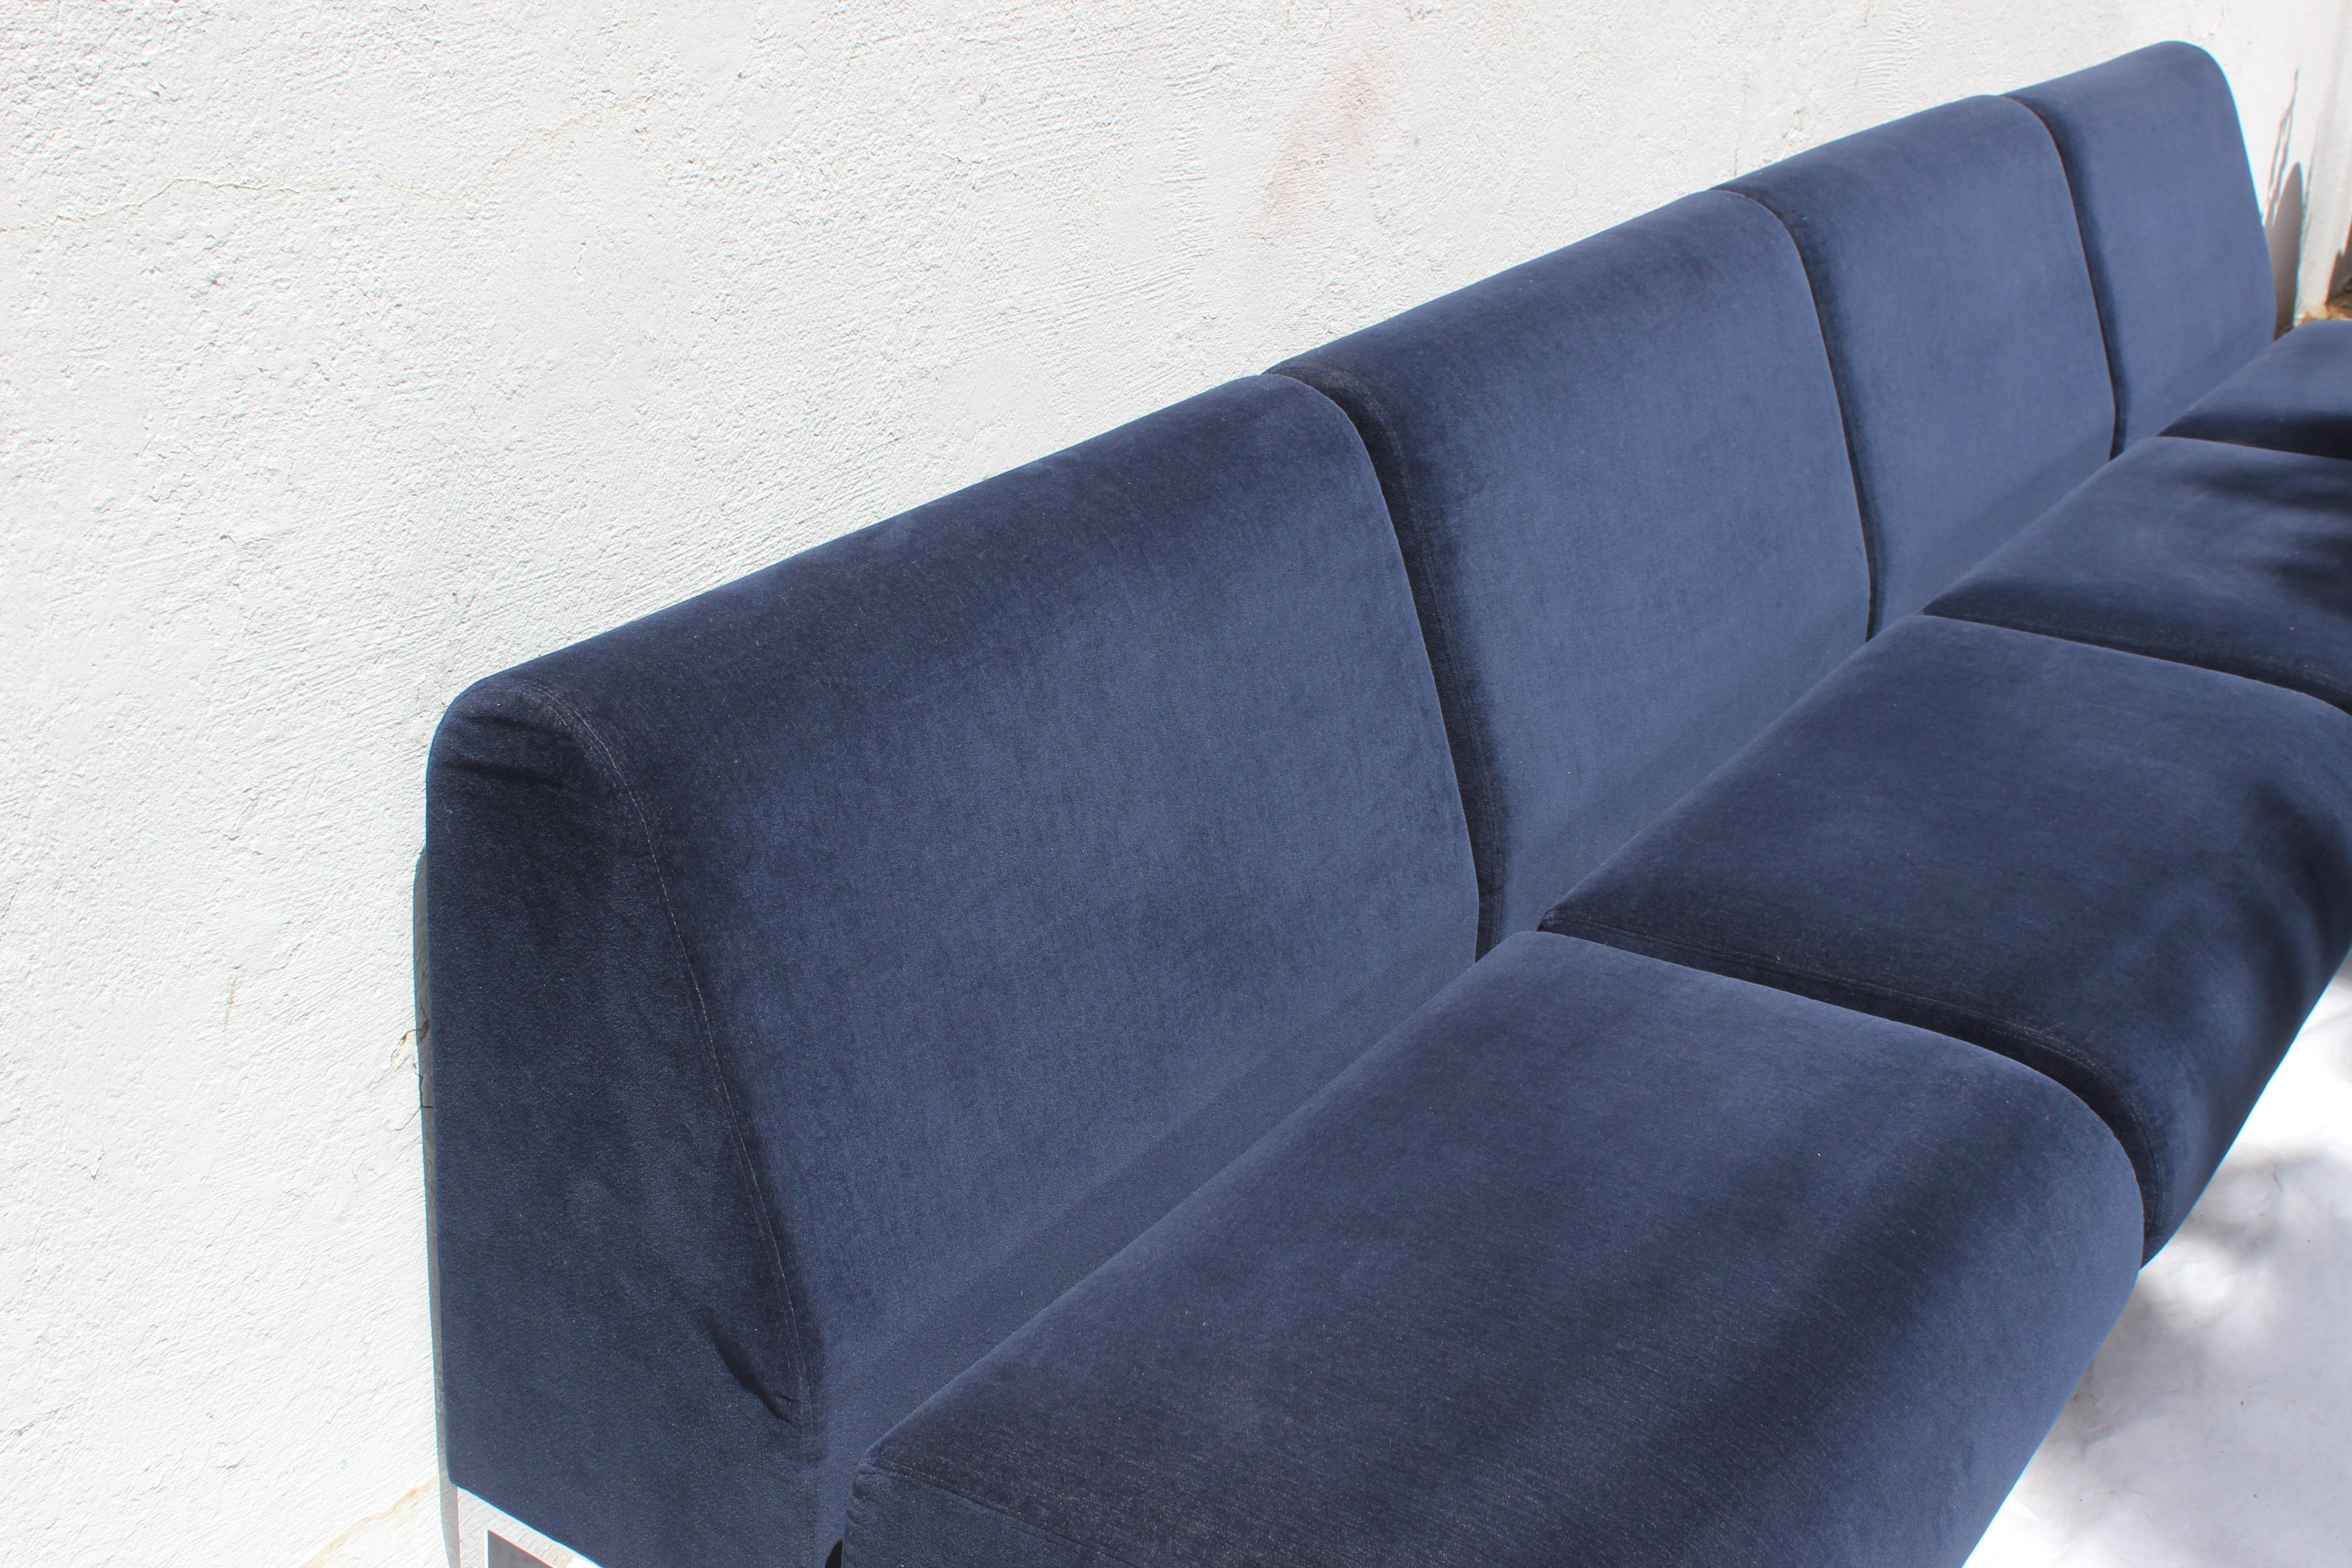 Ensemble de quatre fauteuils club de style Mid-Century Modern tapissés de velours bleu de qualité commerciale. Ils font un merveilleux sectional.

Chacun d'eux mesure
31.5